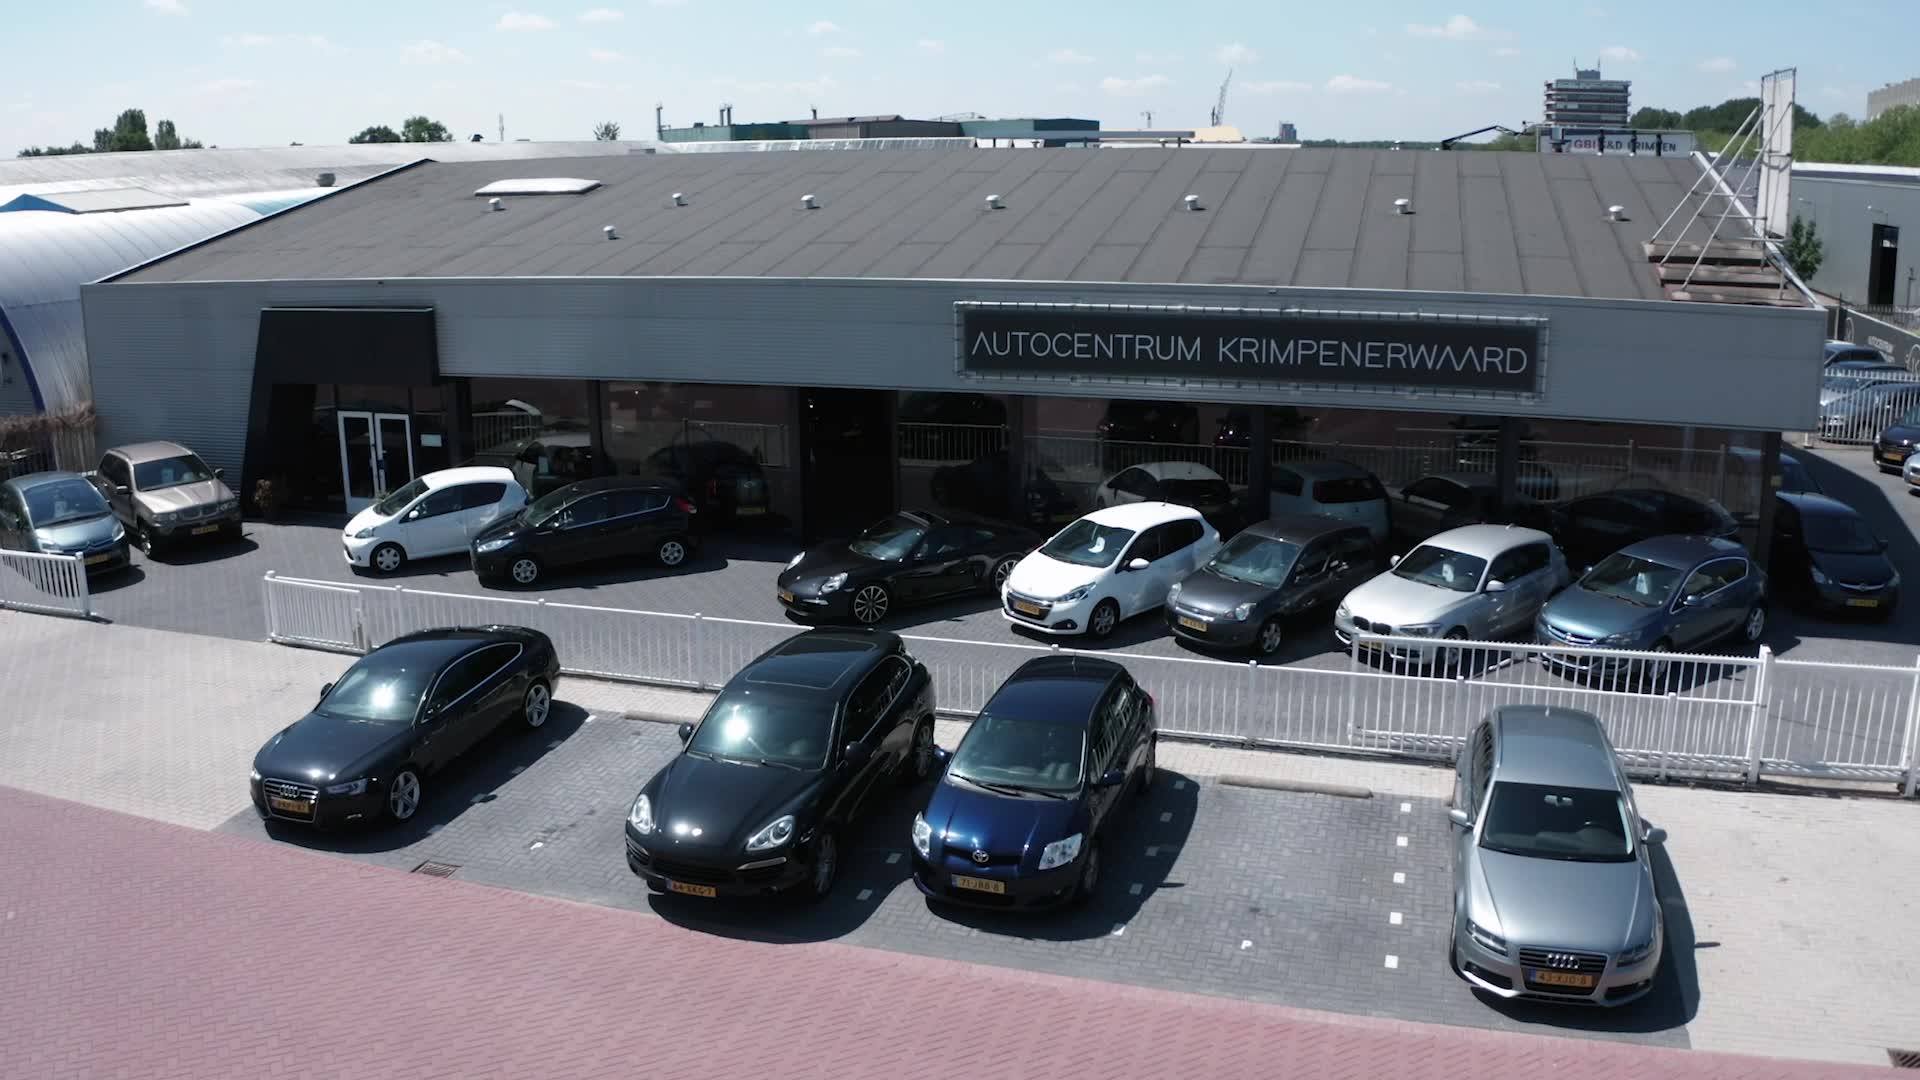 Autocentrum Krimpenerwaard